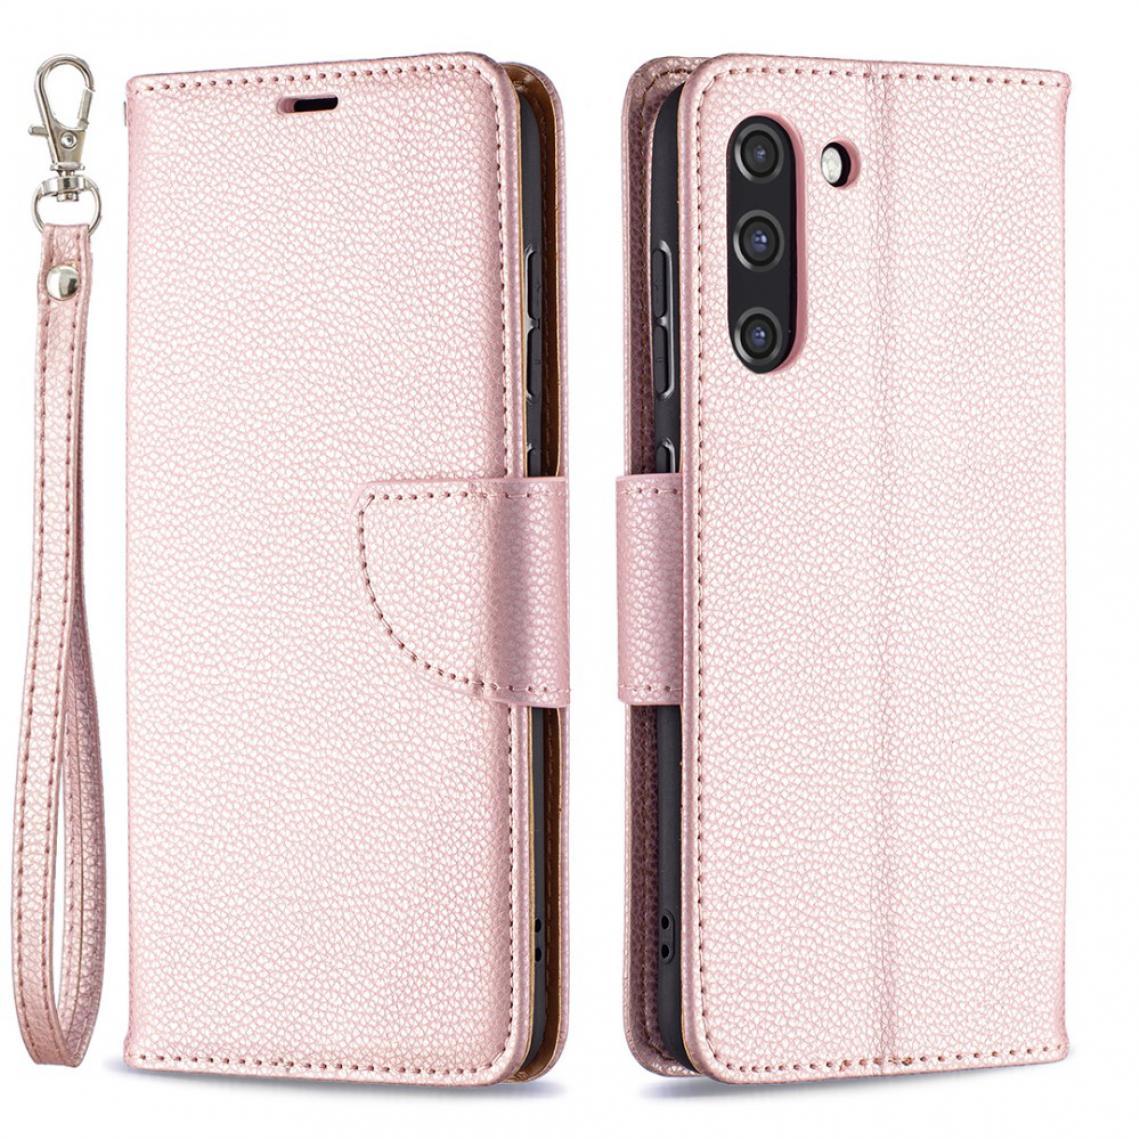 Other - Etui en PU Peau de Litchi avec support or rose pour votre Samsung Galaxy S21 FE/S21 Lite - Coque, étui smartphone